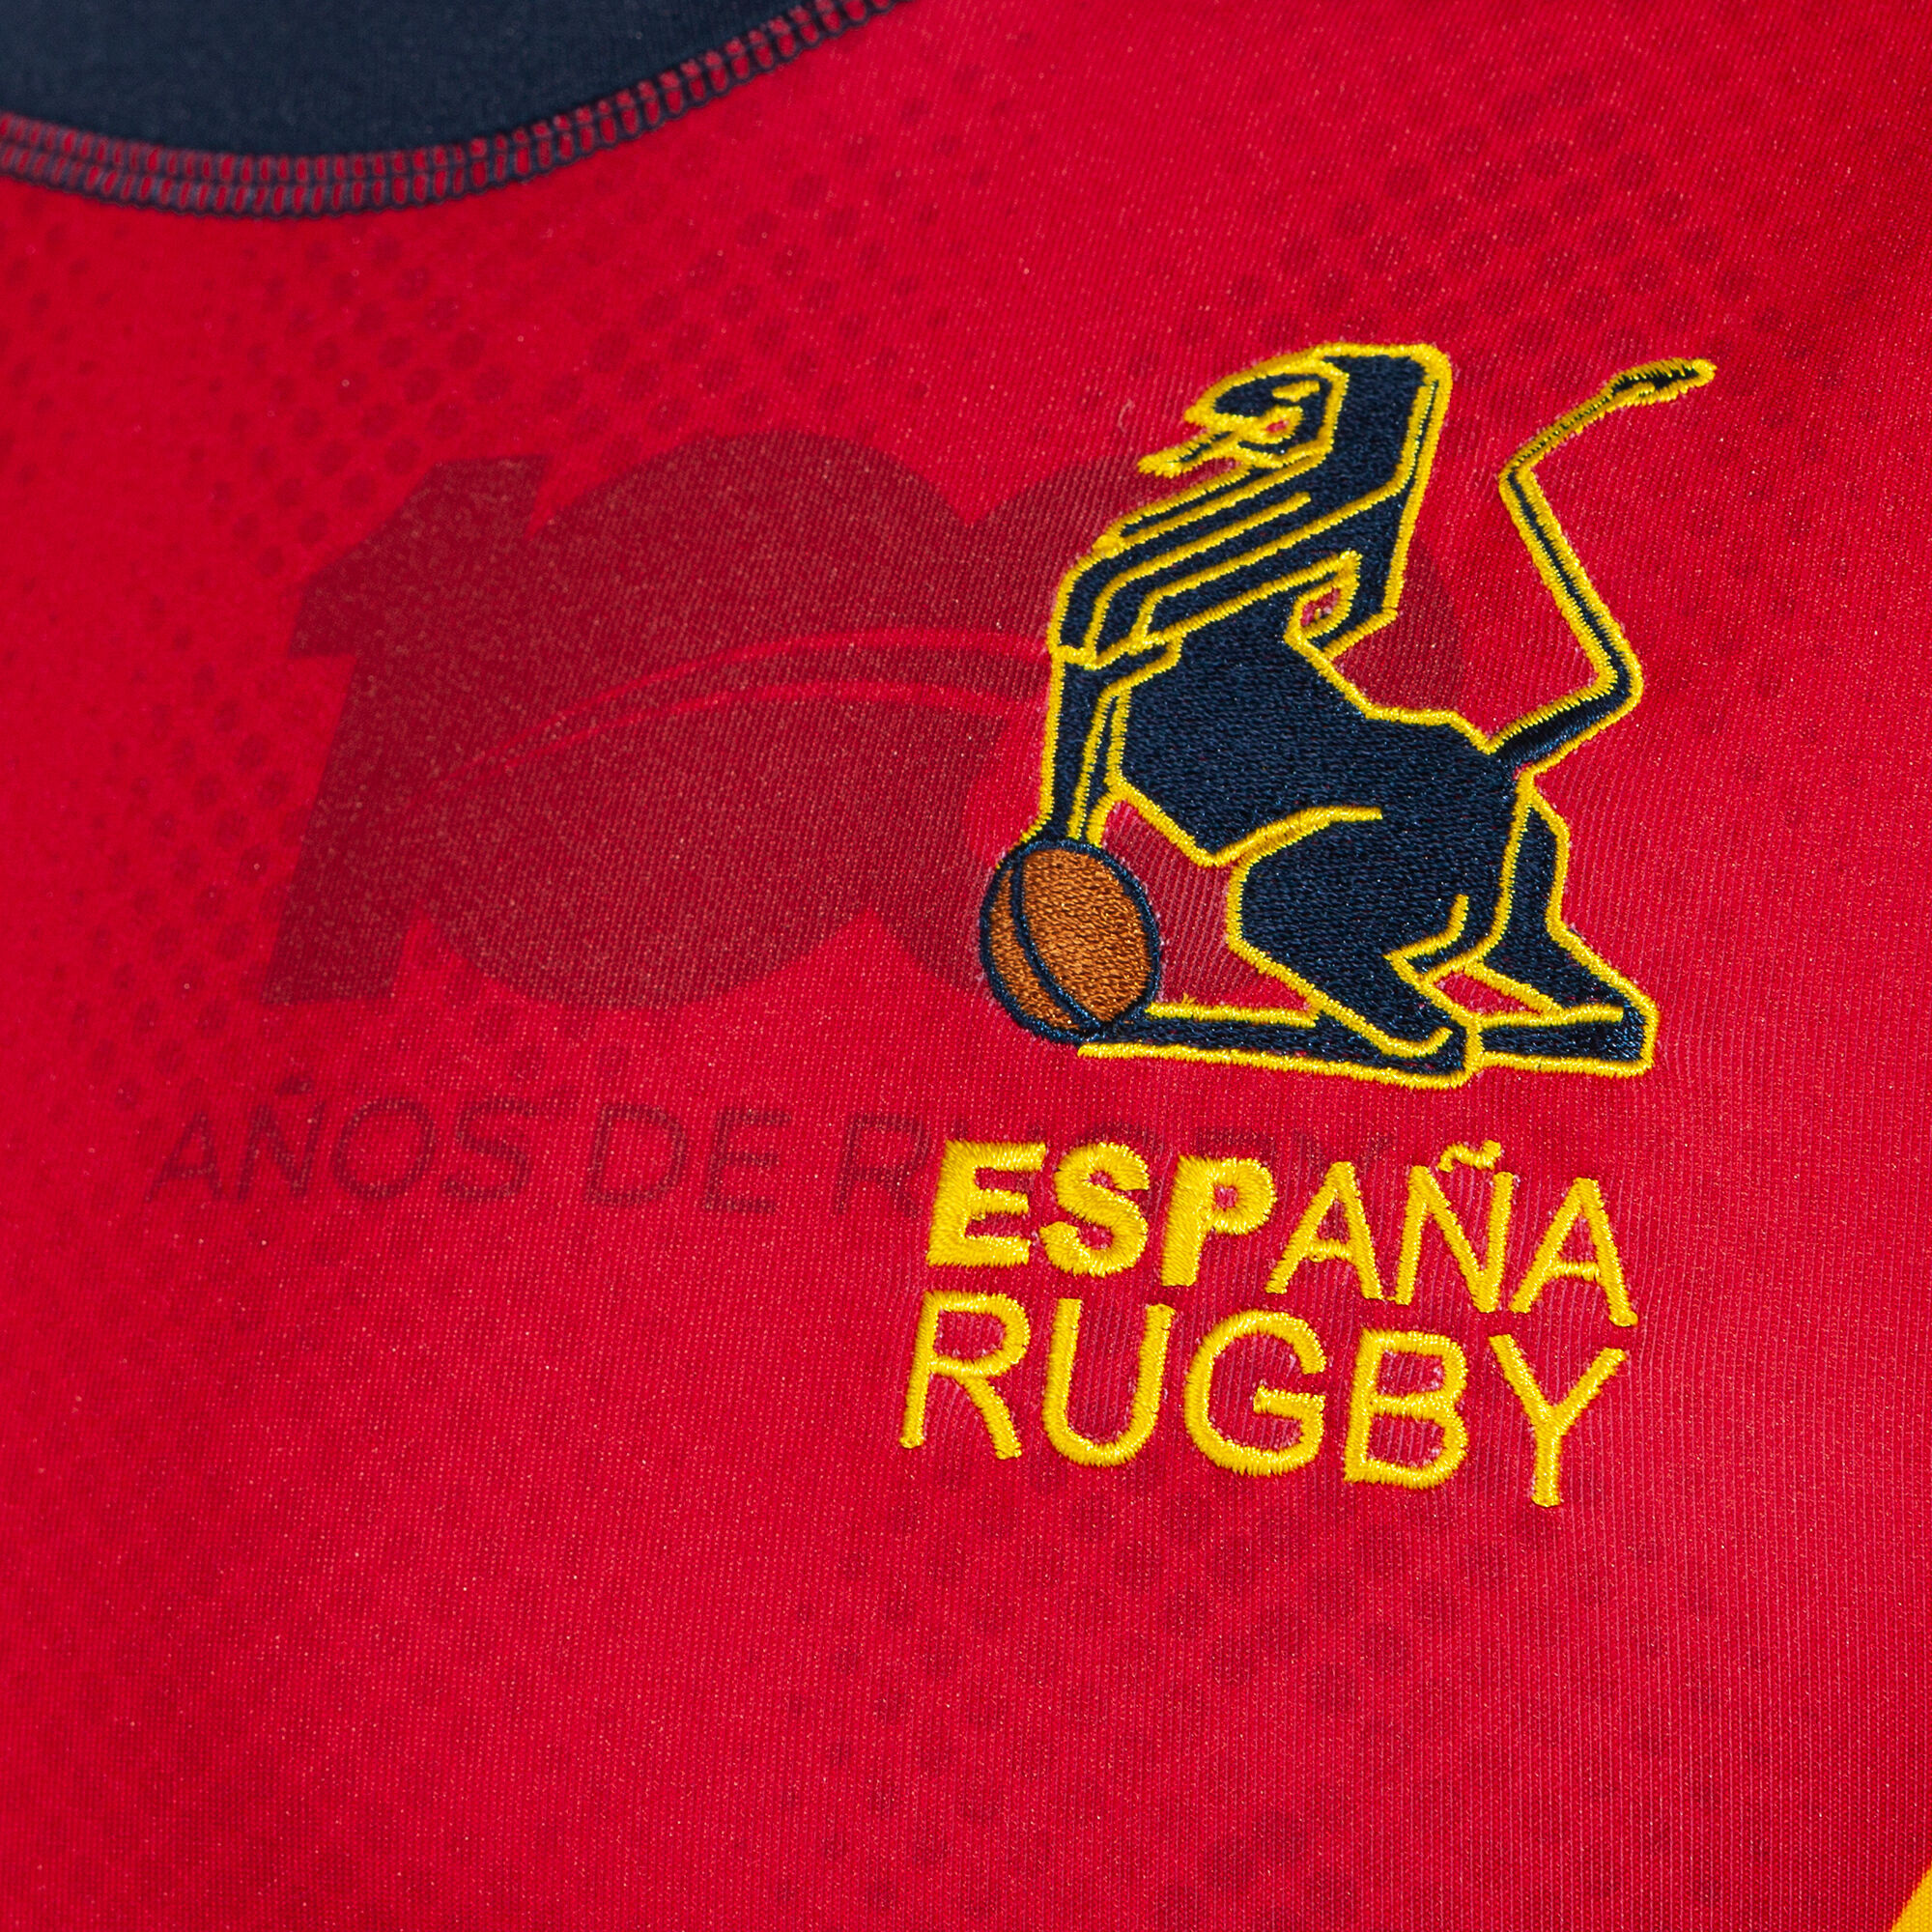 La camiseta de la Federación Española de Rugby para el mundial